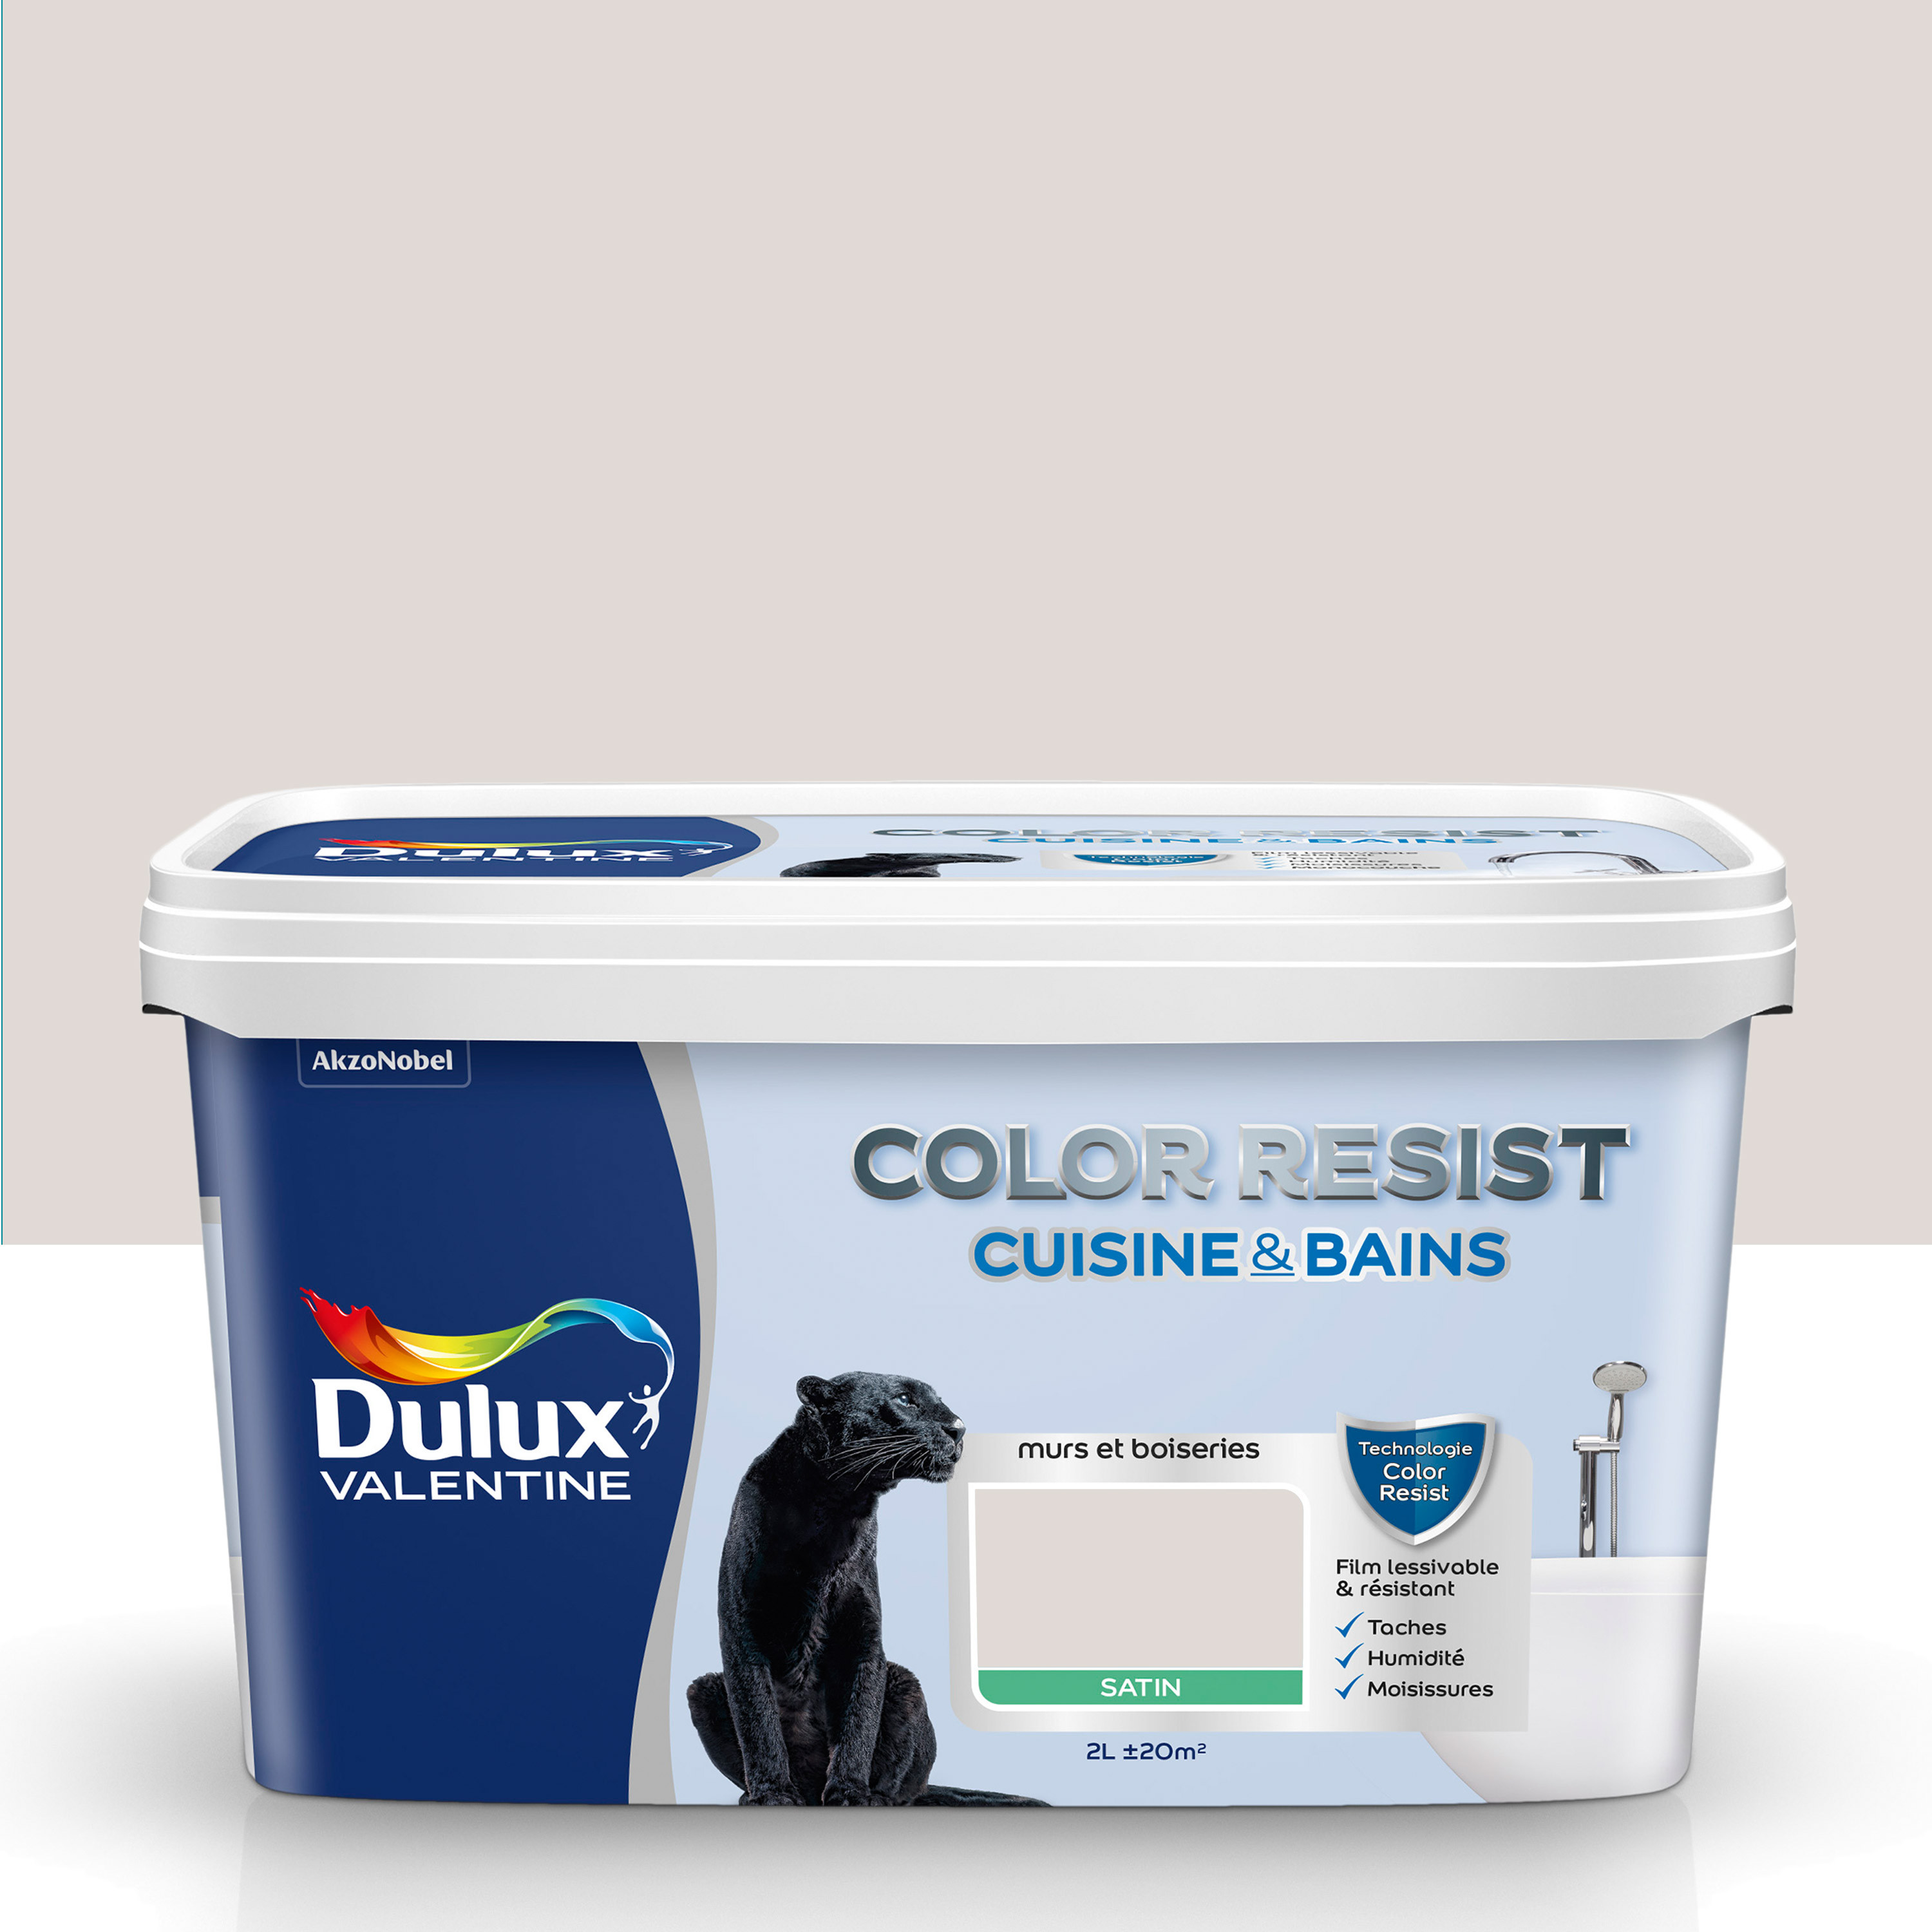 Peinture traitement anti-moisissures DIP Blanc 750 ml